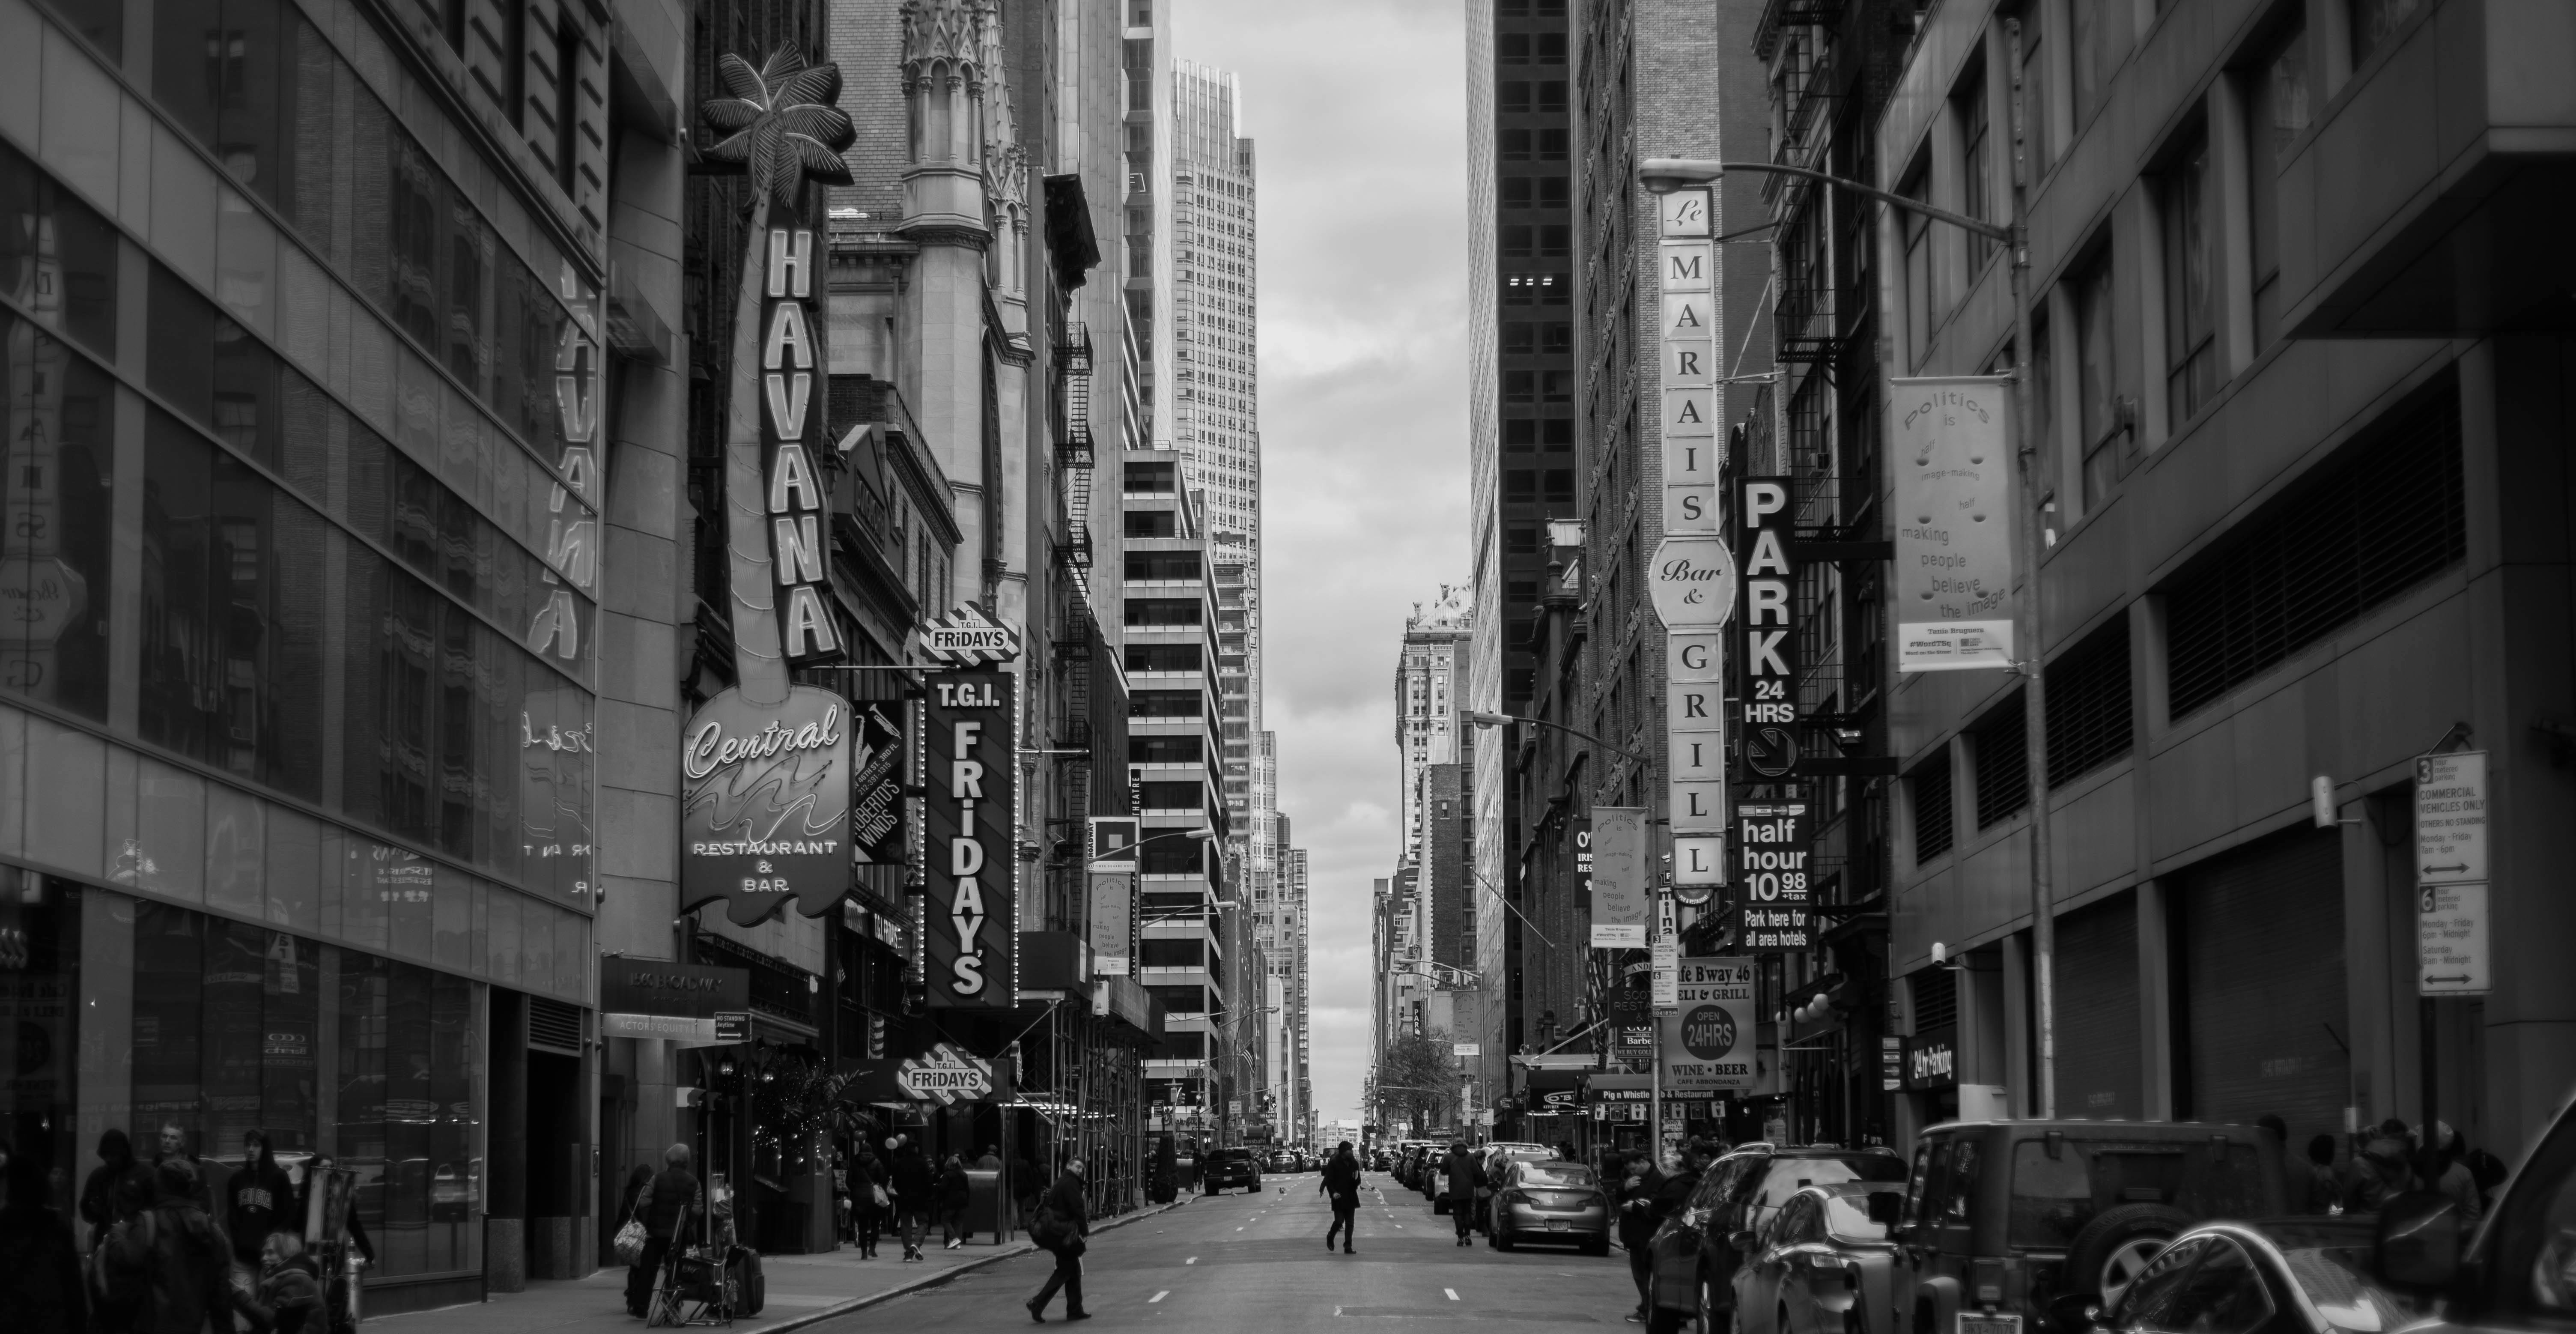 Chùm ảnh đẹp nhưng buồn đến lặng người: Thành phố New York nhộn nhịp bỗng  hóa ảm đạm trong những ngày Covid-19 bao trùm